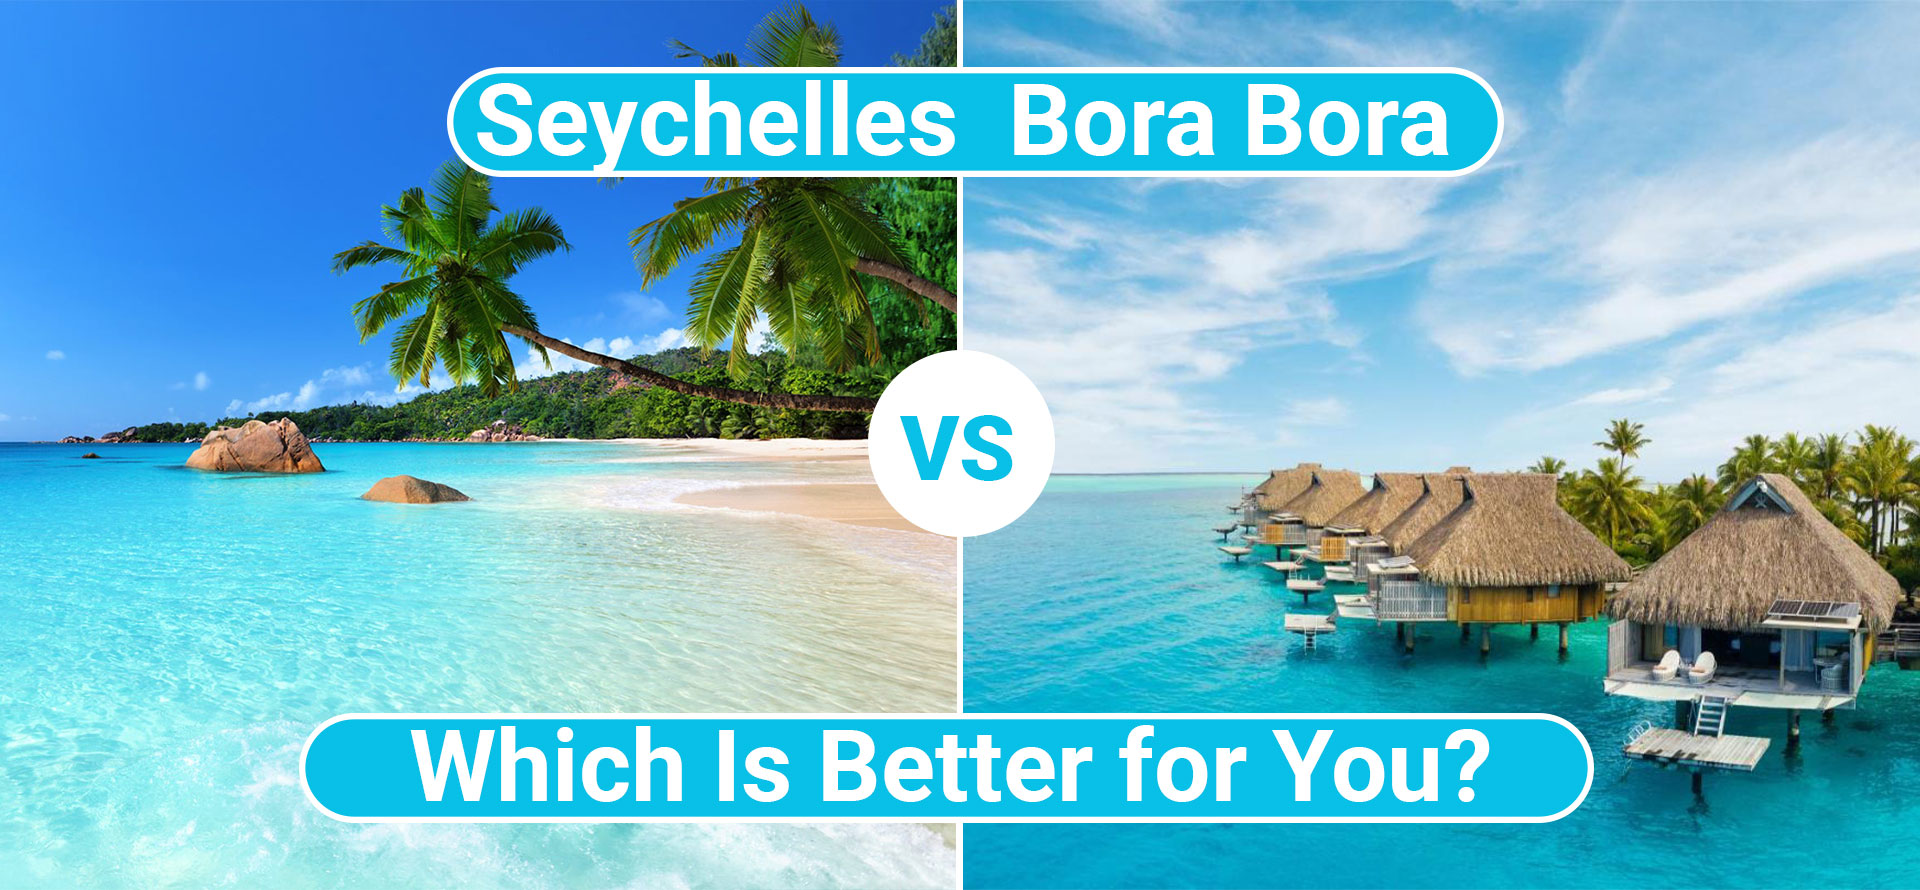 Seychelles vs Bora Bora.